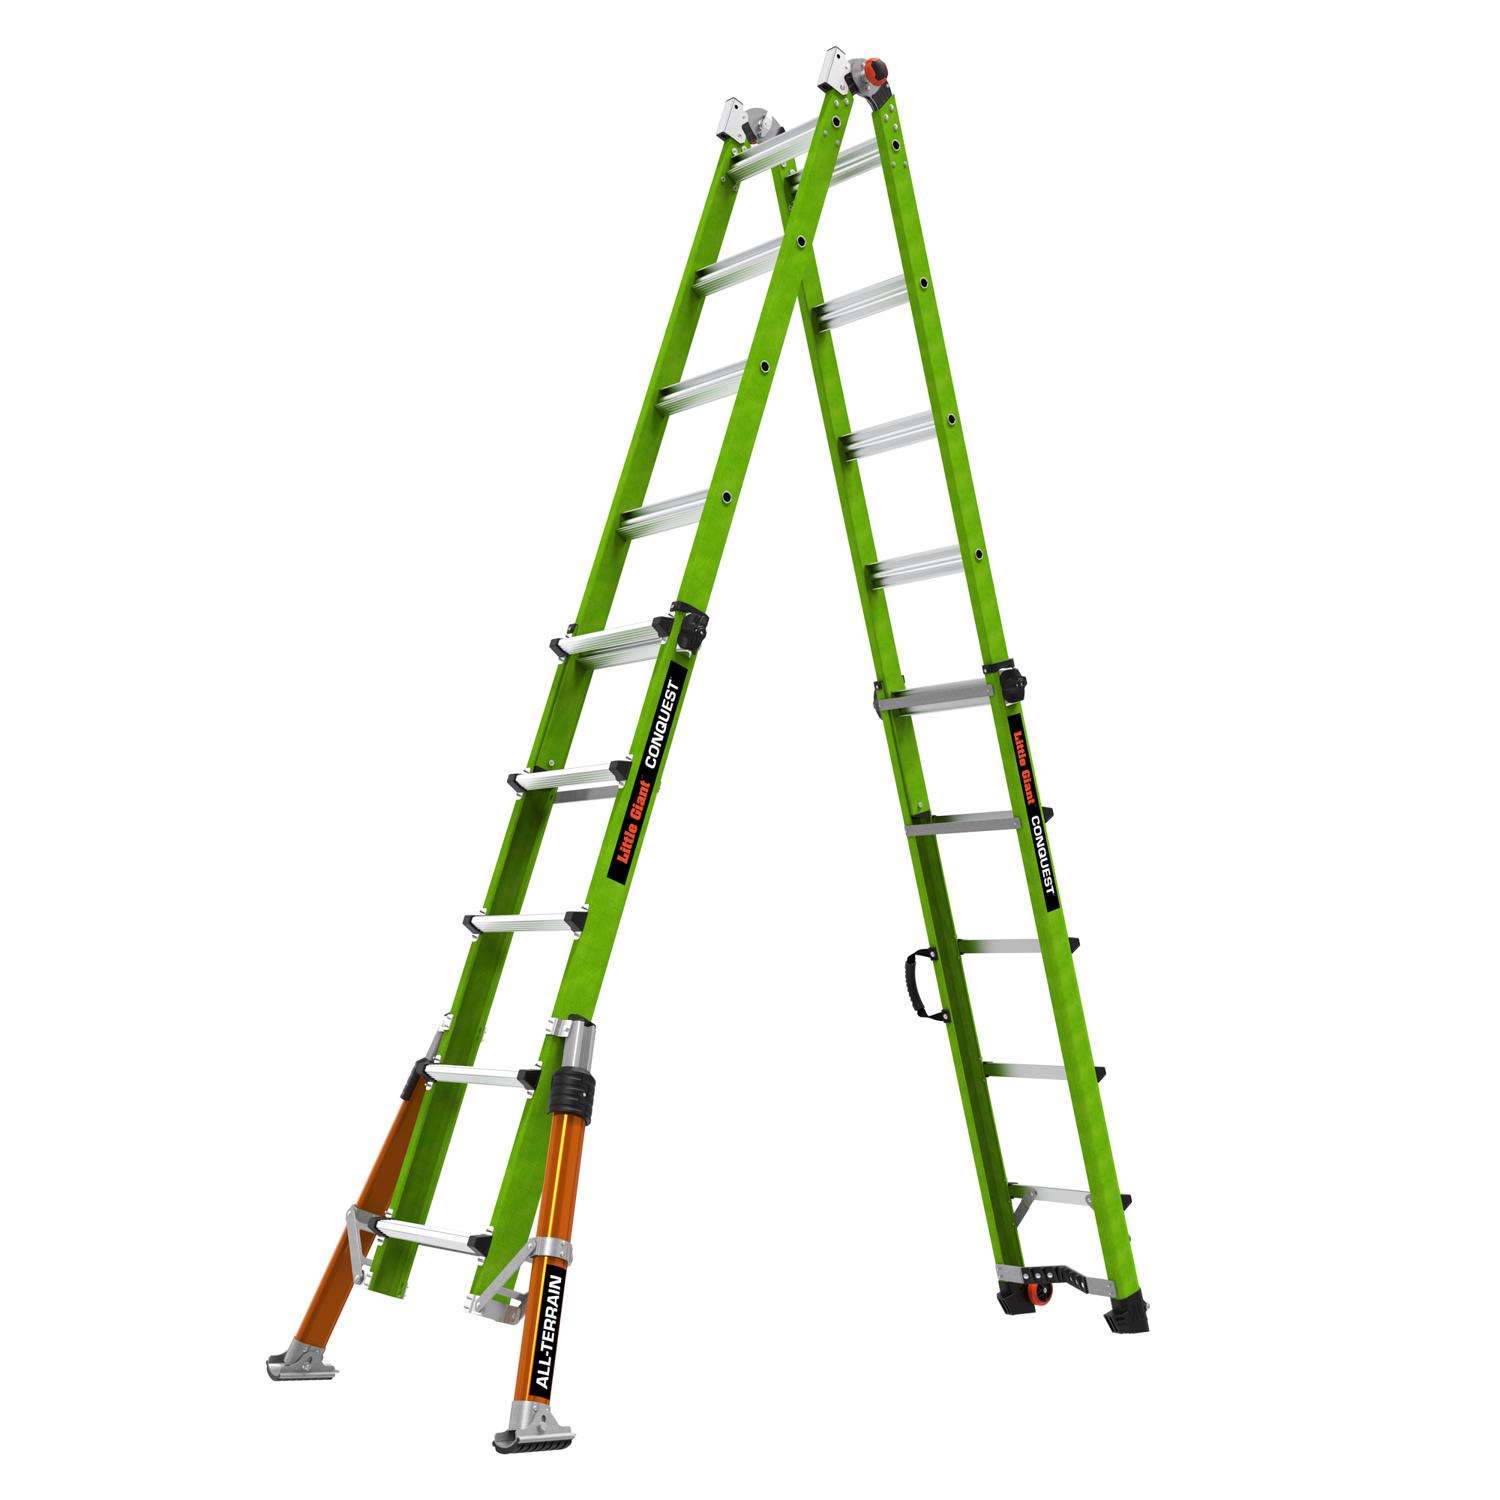 Lock Jaw Ladder Grip - Ladder Fastening Device